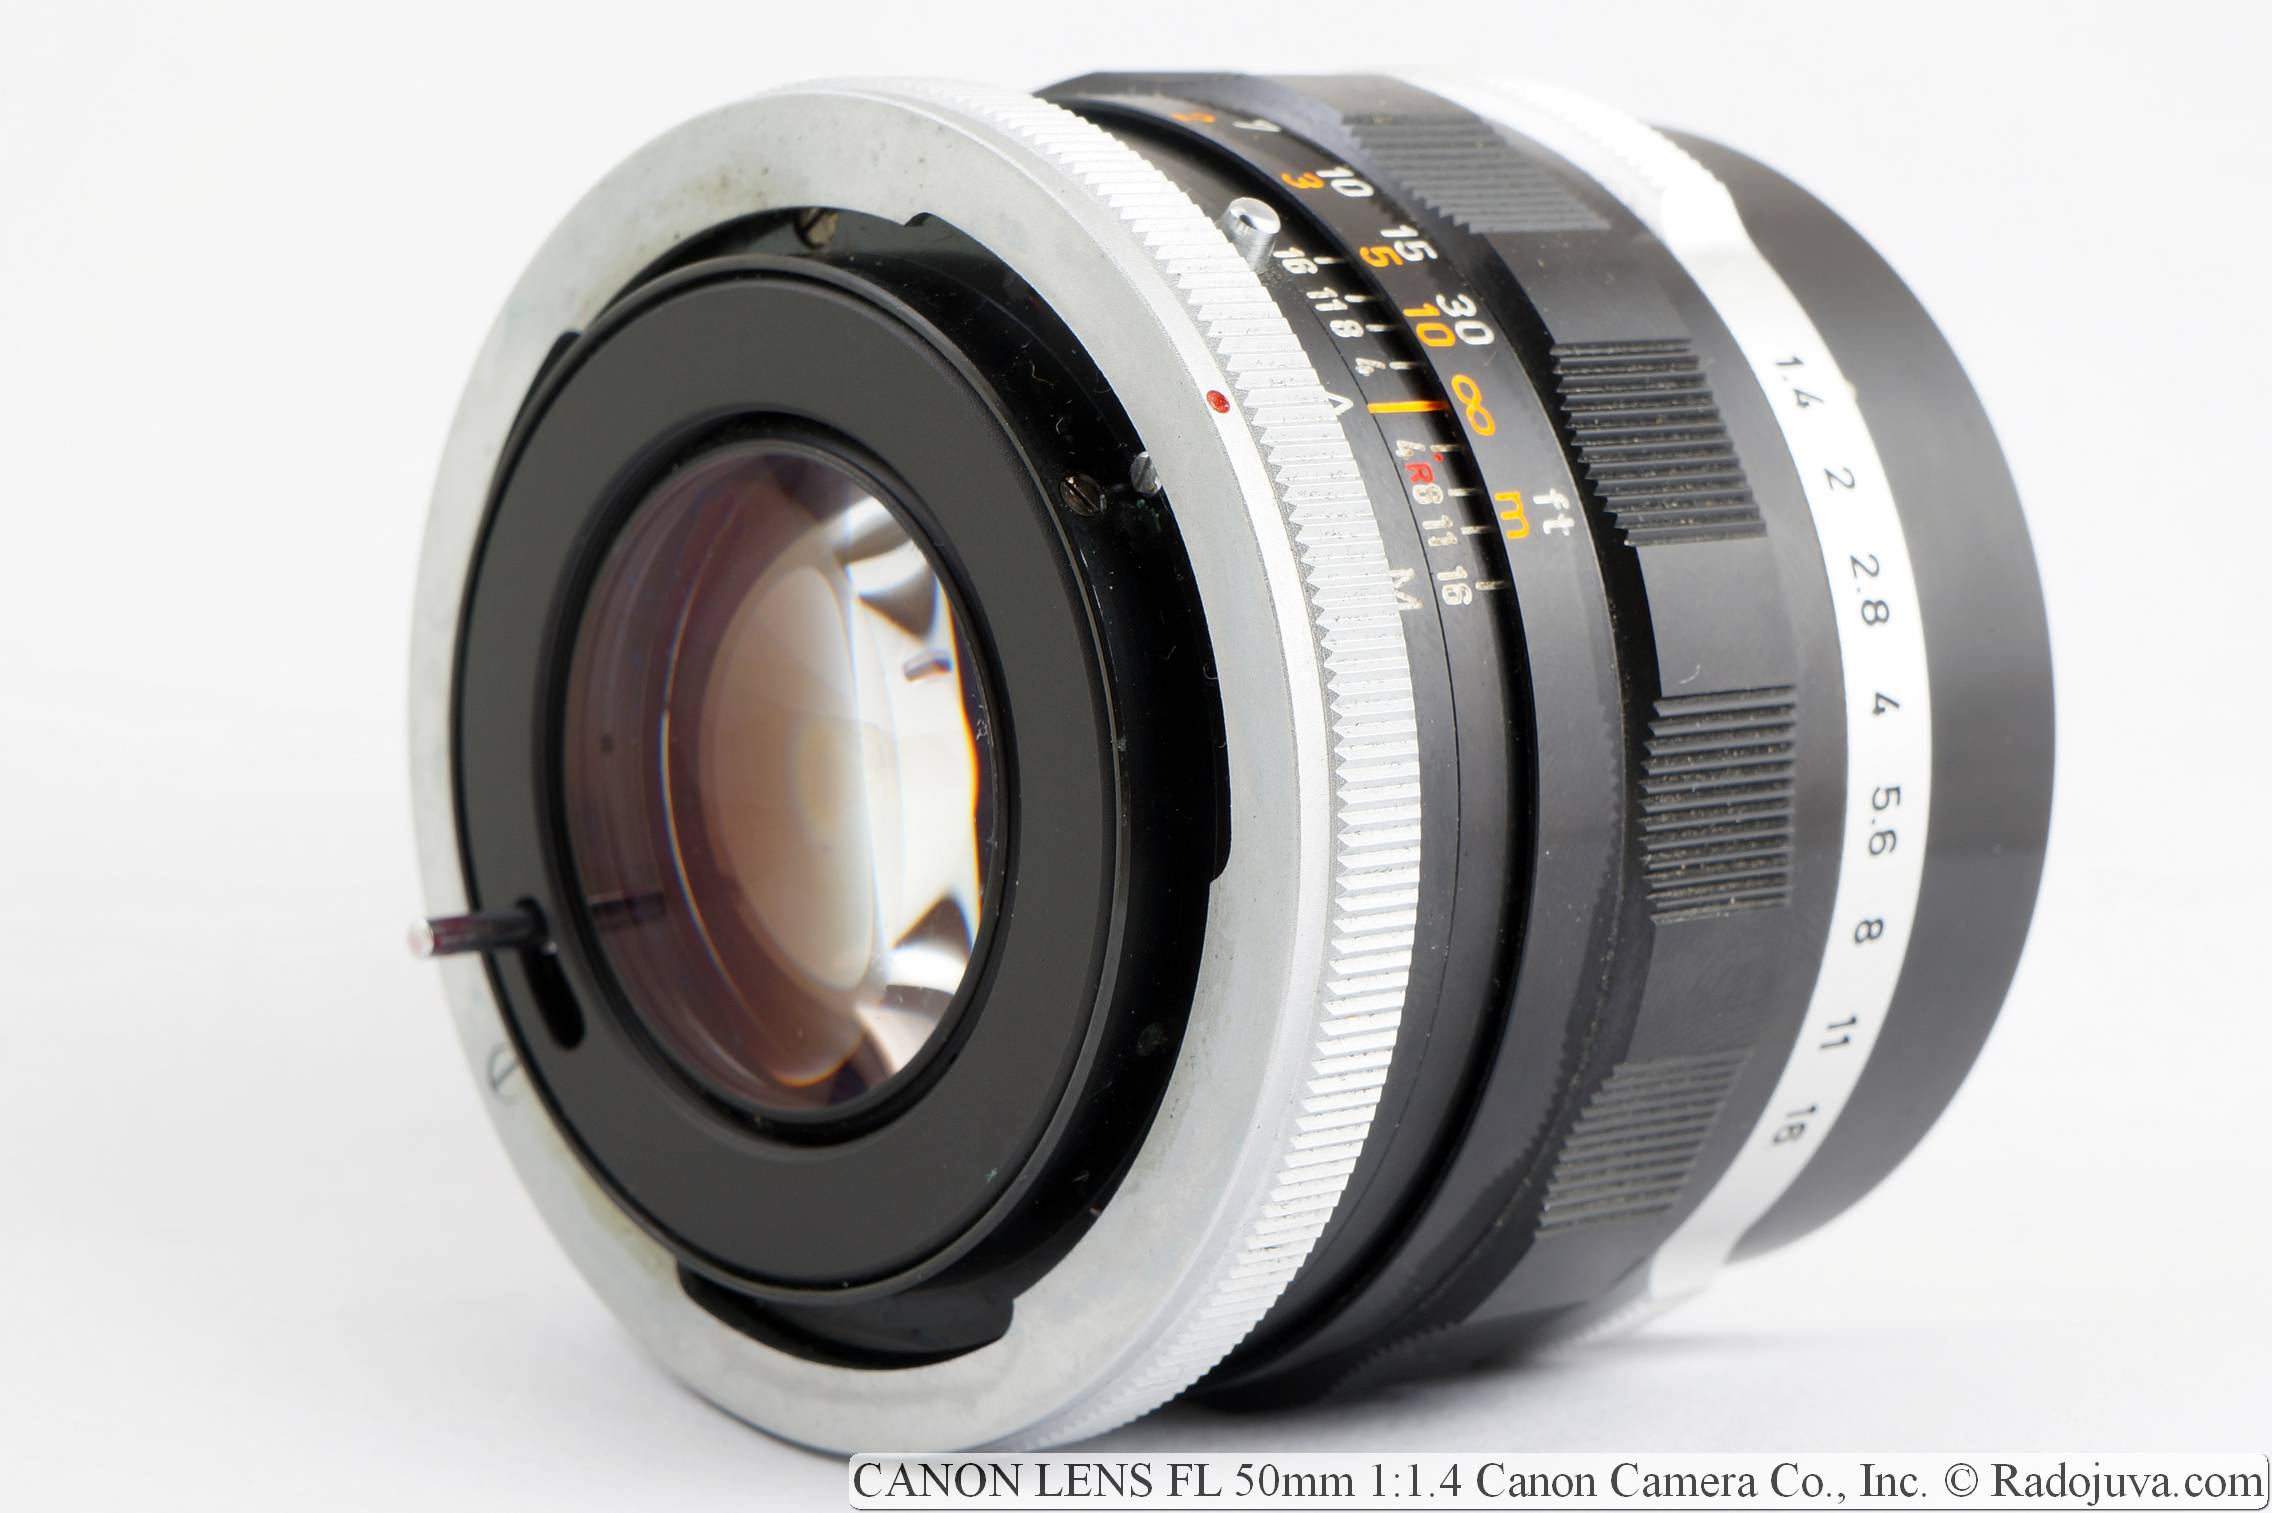 CANON LENS FL 50mm 1:1.4 Canon Camera Co., Inc.